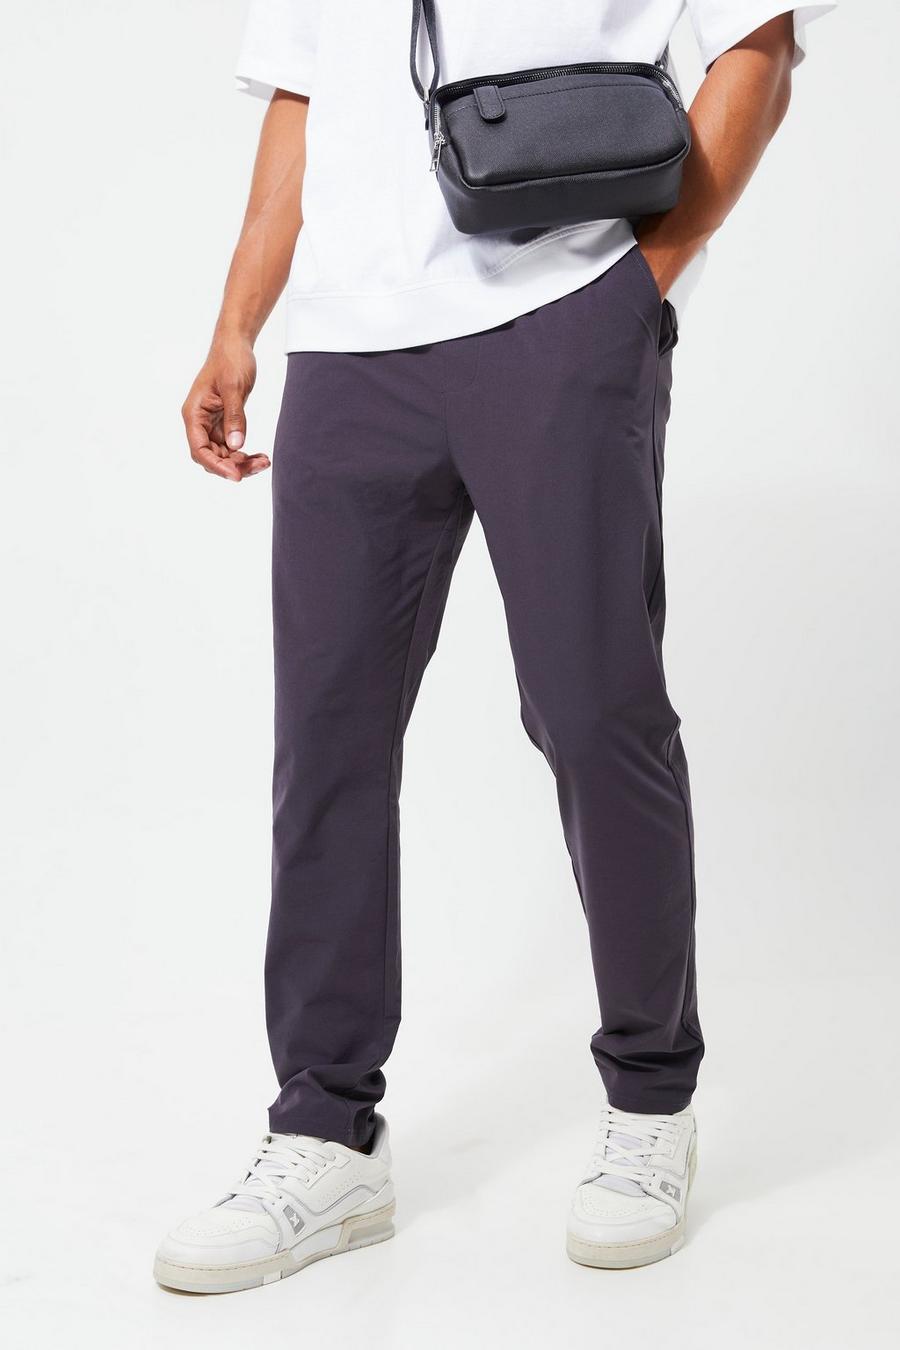 Pantaloni Slim Fit leggeri in Stretch con vita elasticizzata, Charcoal